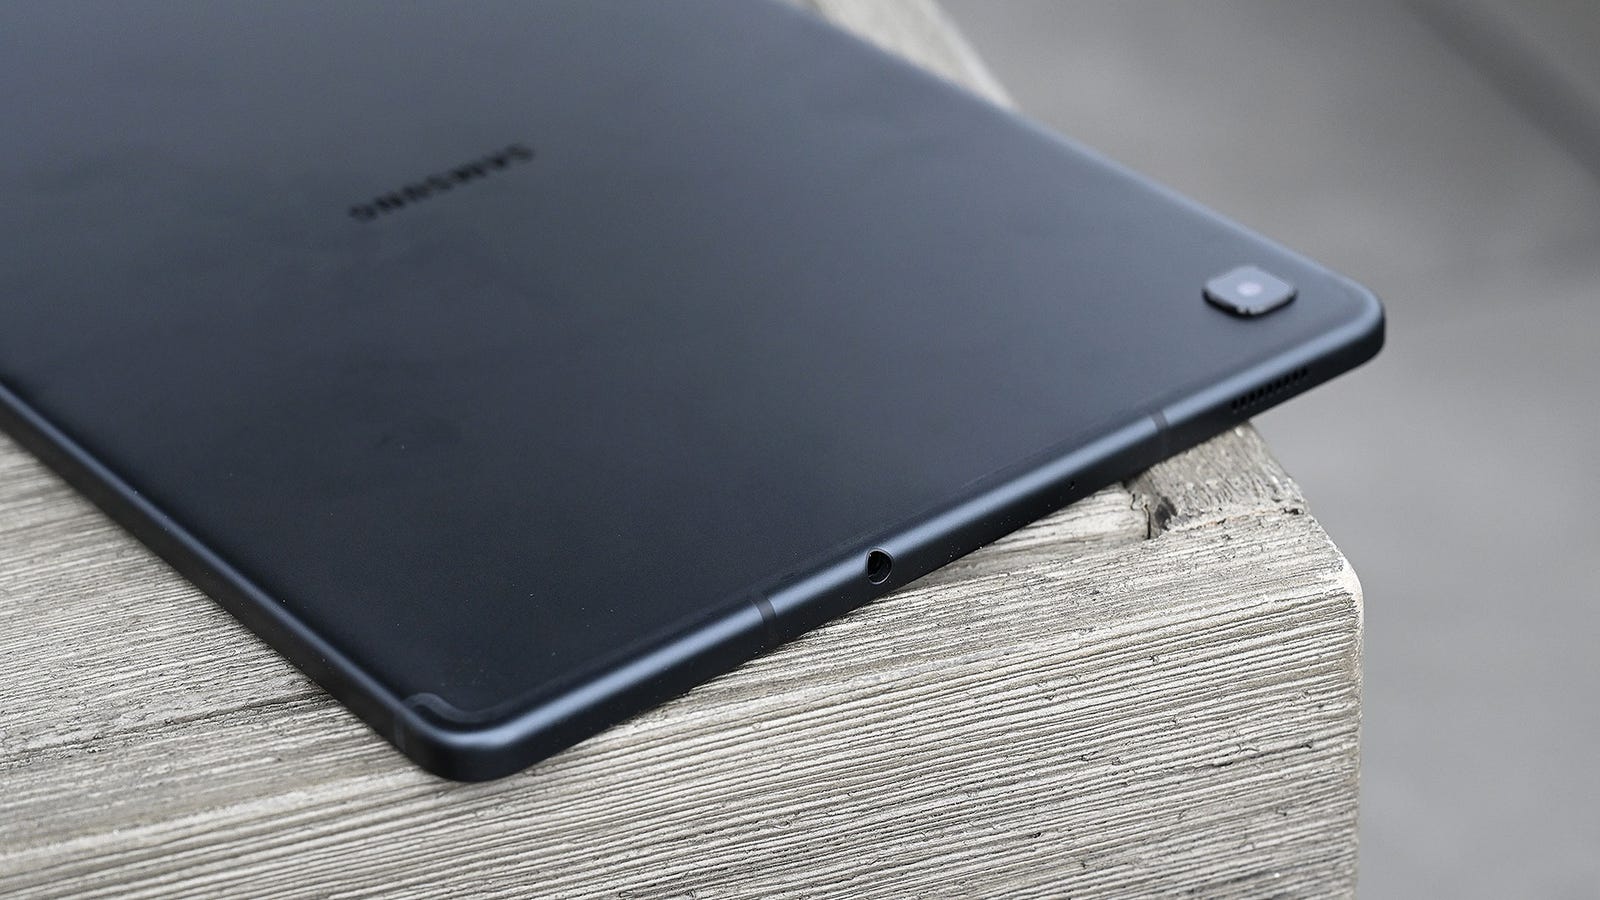 标题为Samsungs Tab S6 Lite的文章的插图是您需要的便宜平板电脑